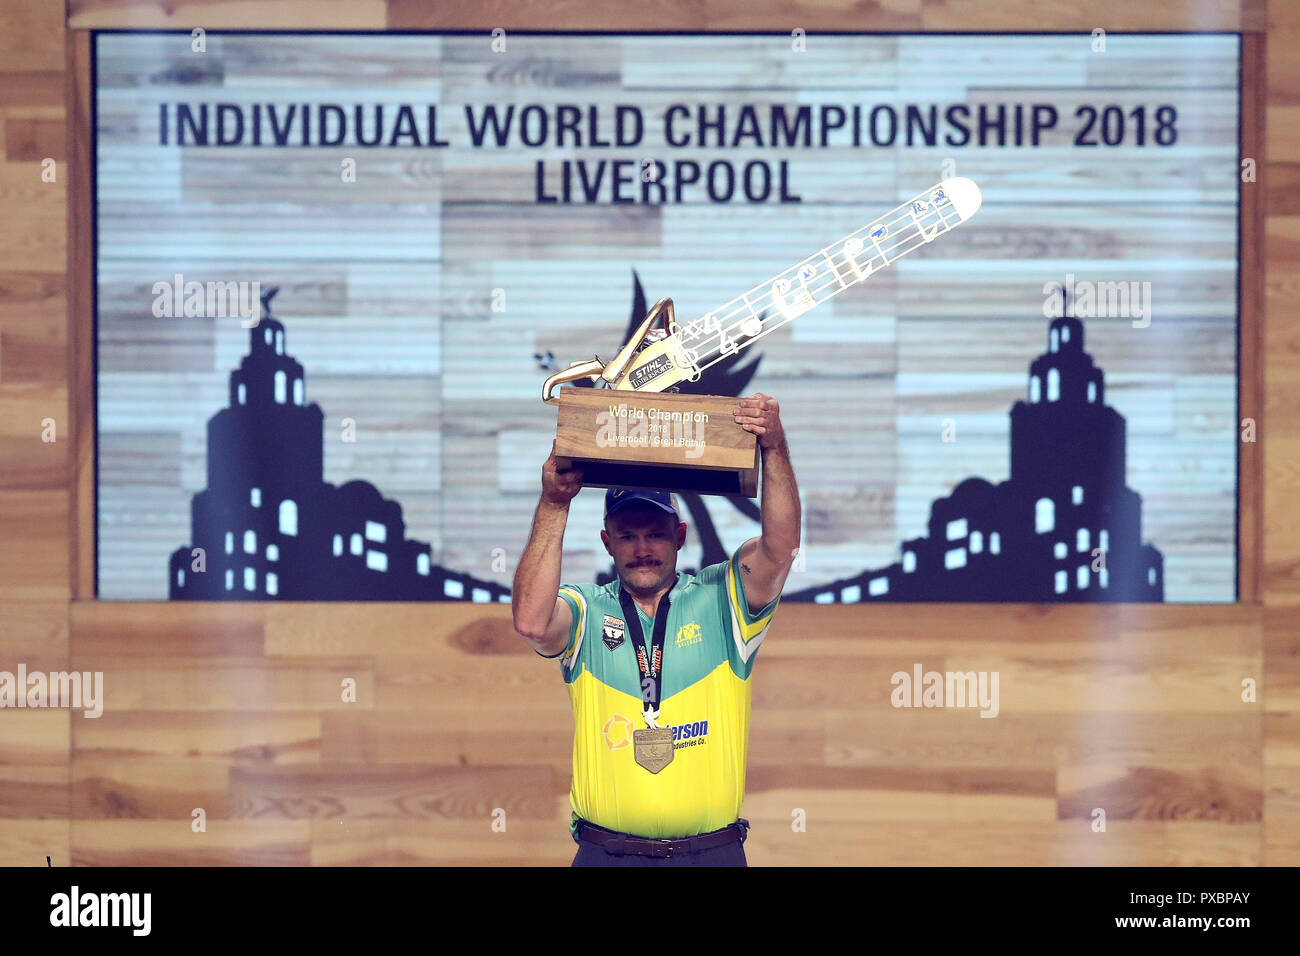 Liverpool, UK. 20th Oct, 2018. Stihl TIMBERSPORTS Individual World Championships 2018 Credit: Paul Greenwood/Alamy Live News Stock Photo